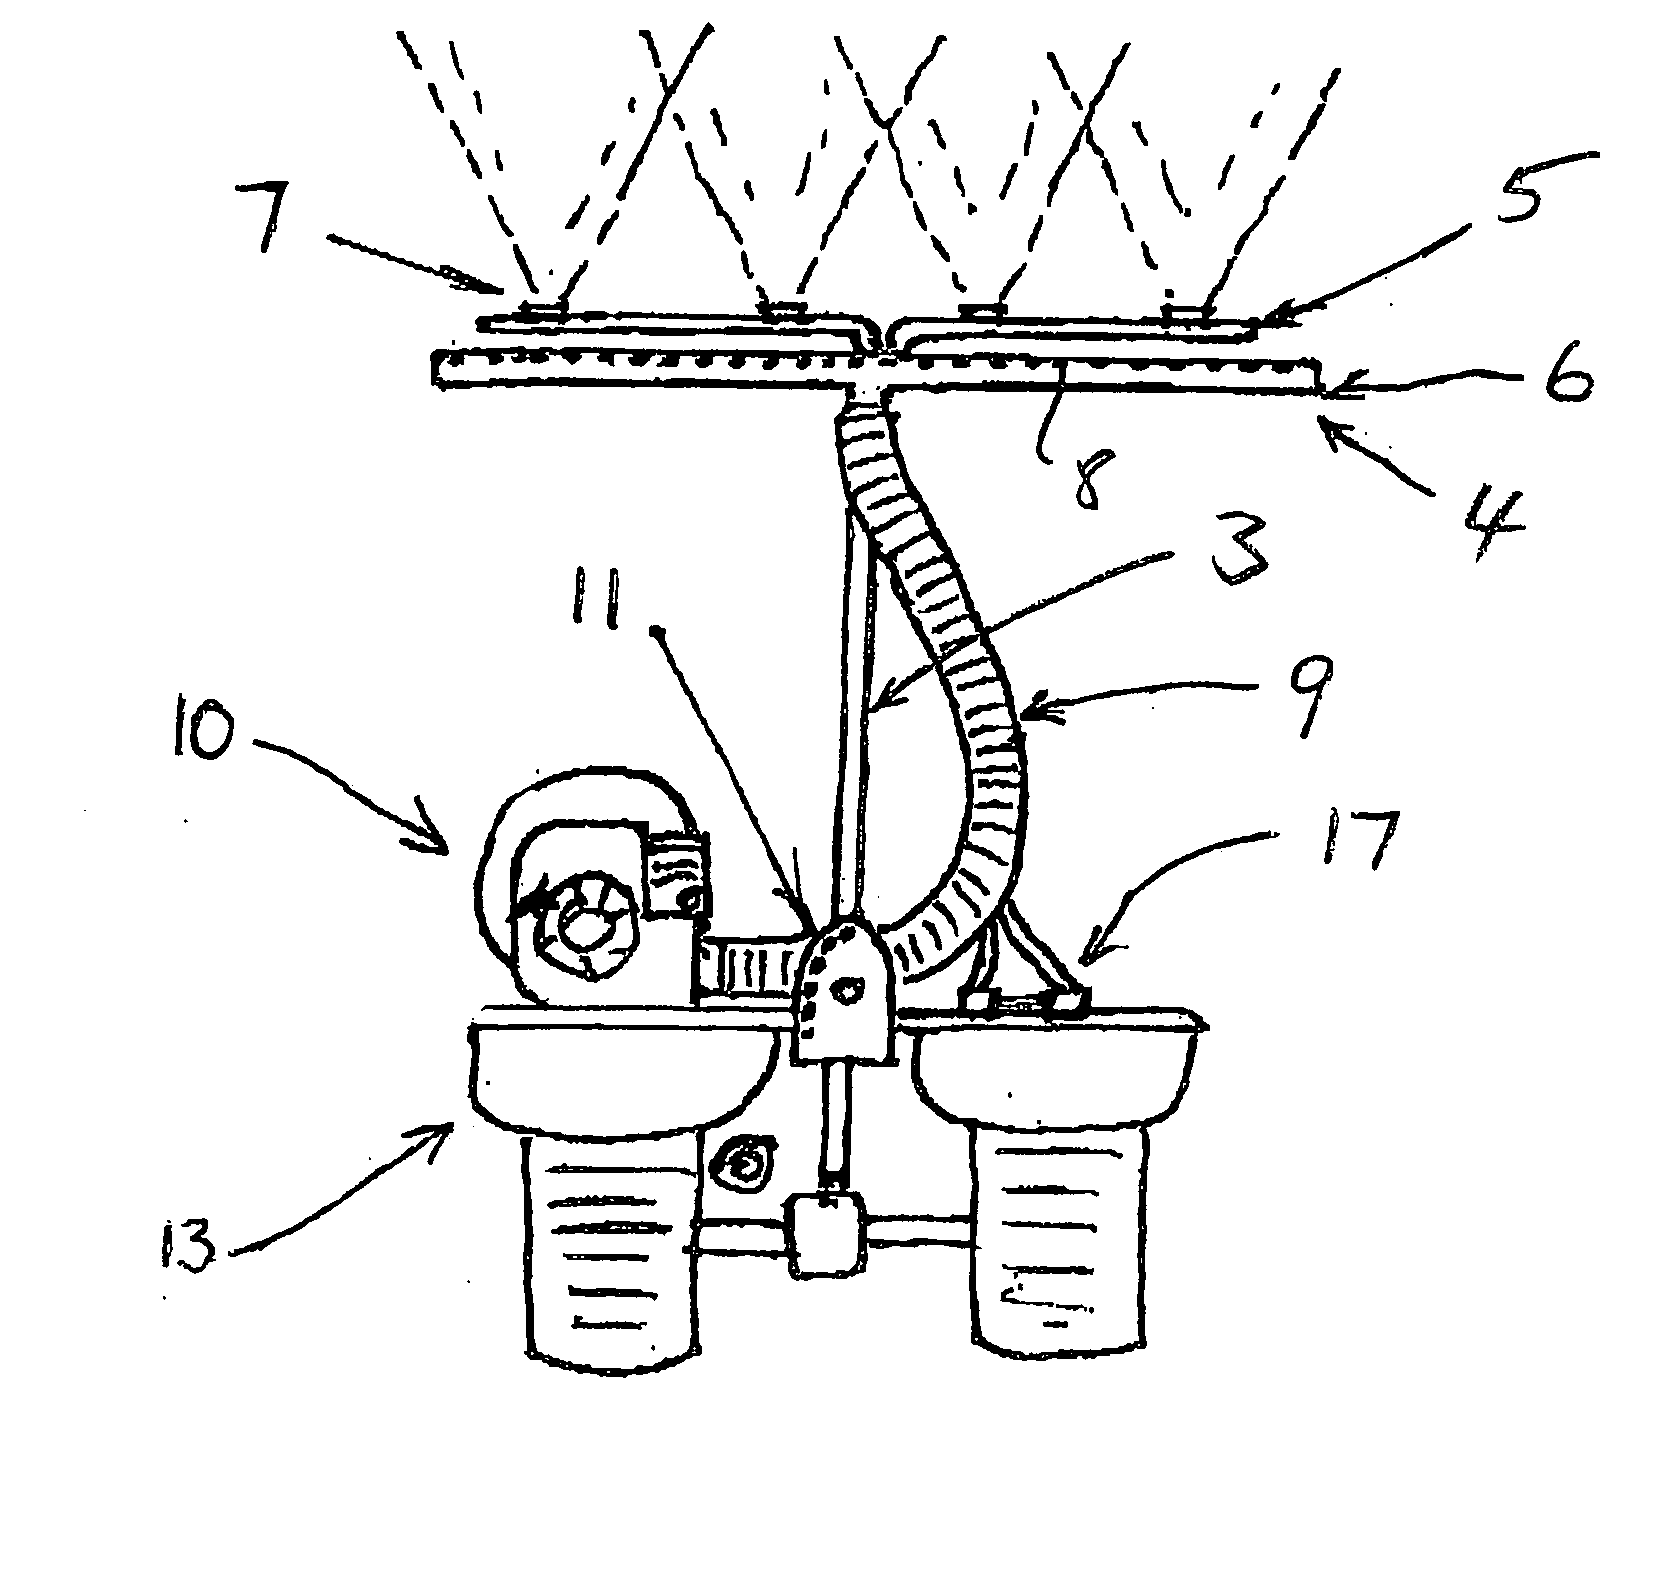 Spraying apparatus